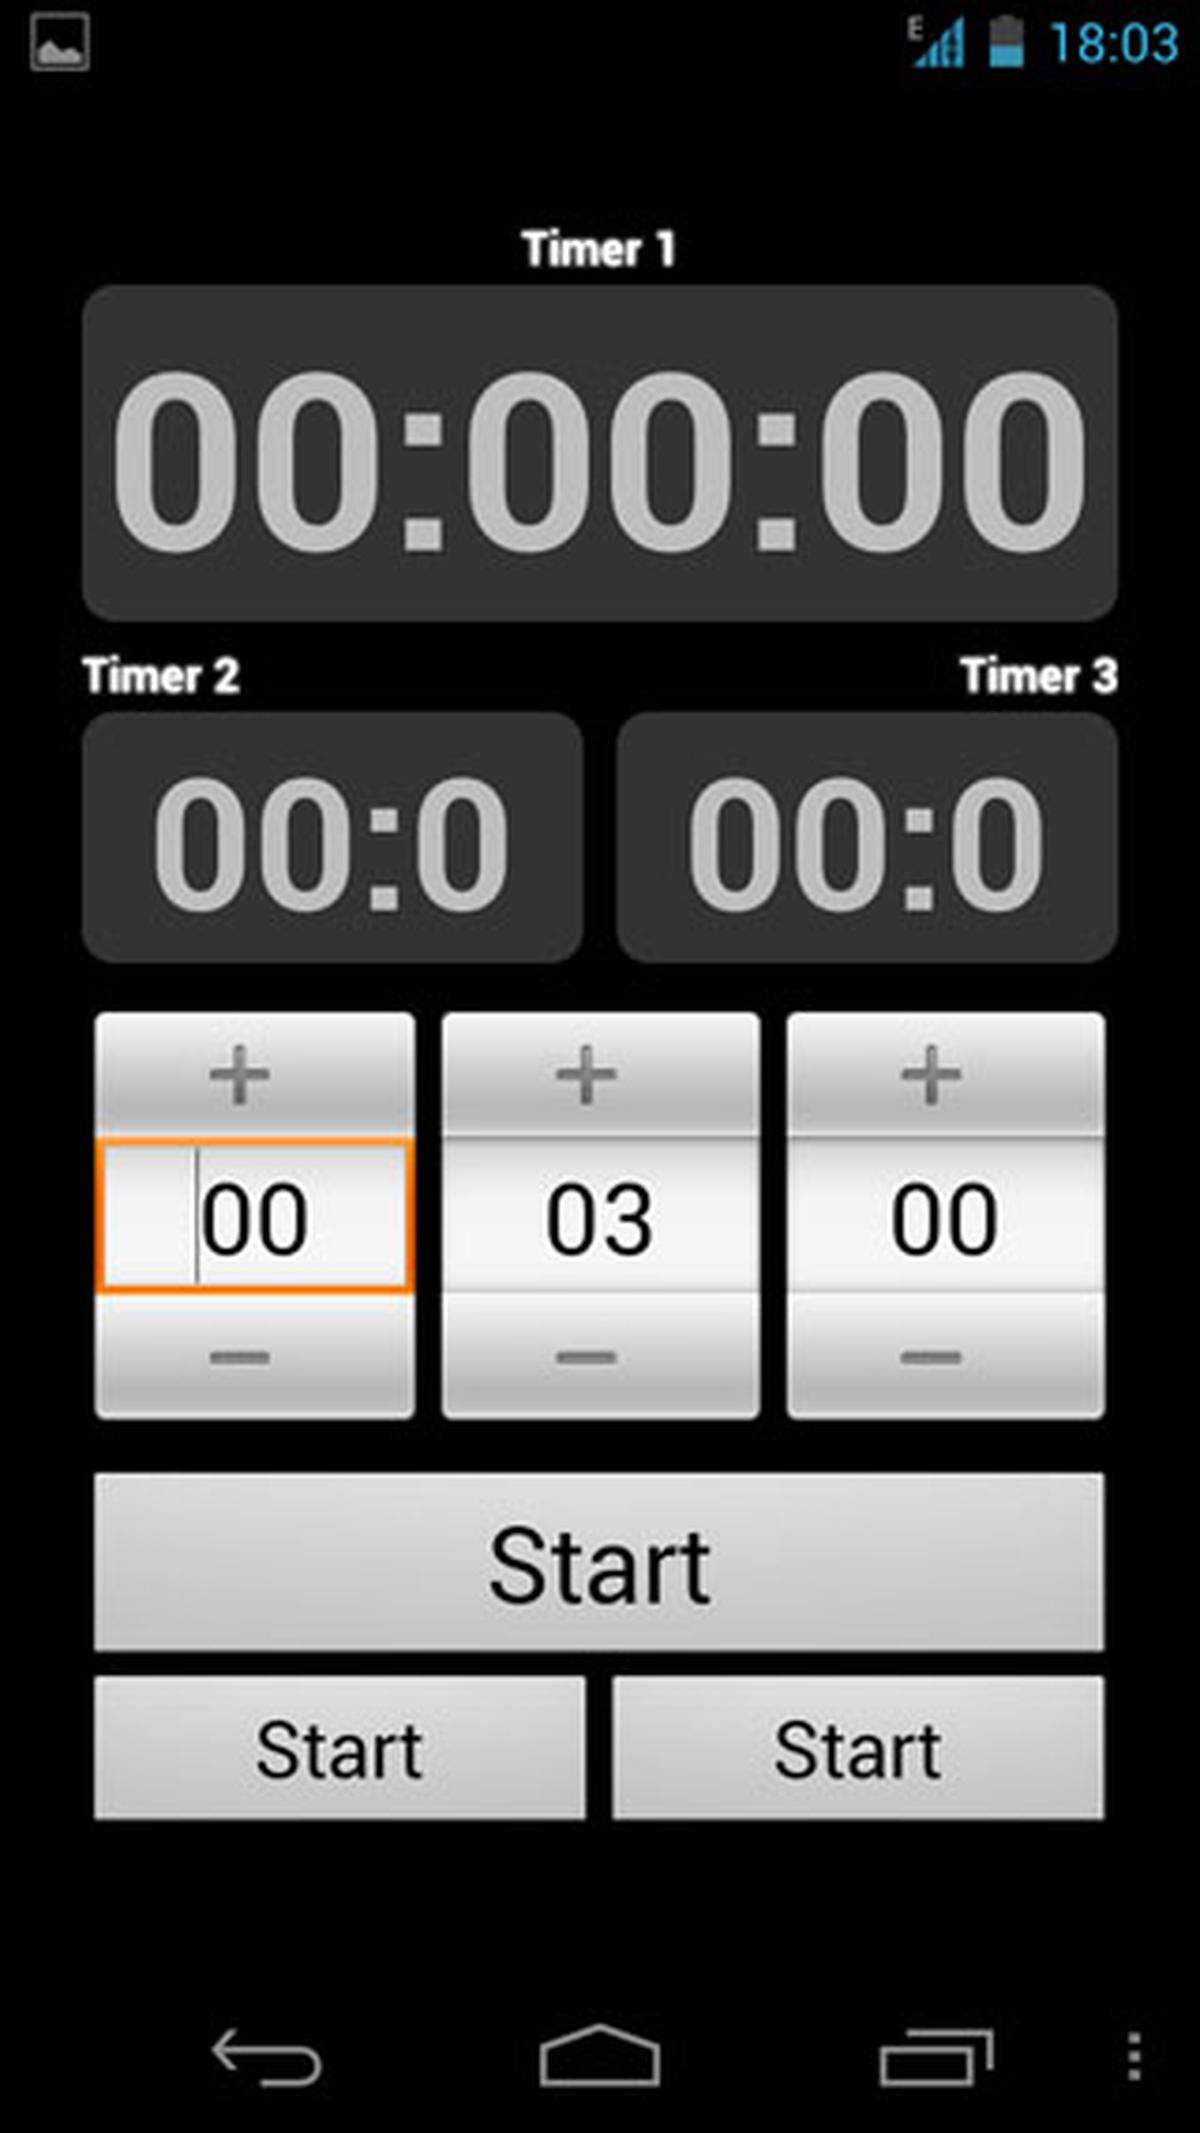 Währen das iPhone bereits in der Uhr-Funktion einen Timer bietet, muss diese Funktion unter Android nachgerüstet werden. Kitchen Timer ist einfach zu benutzen und bietet gleich drei Timer, die gleichzeitig laufen können.